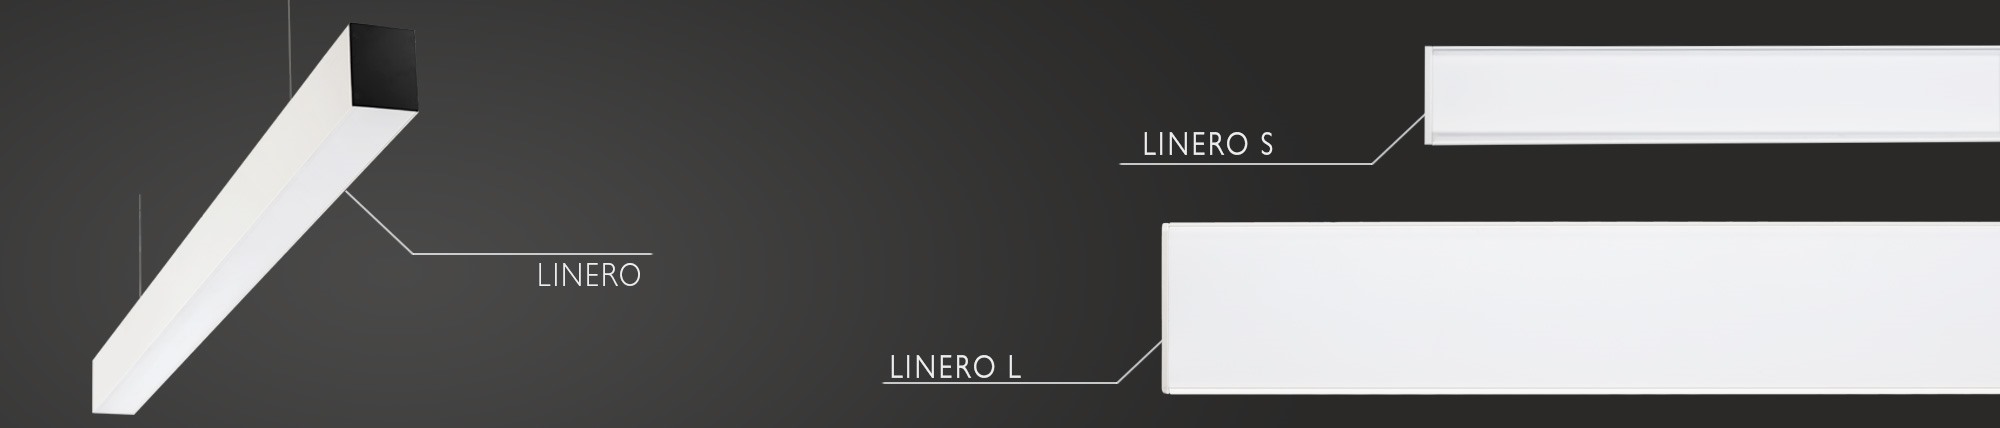 Linero S